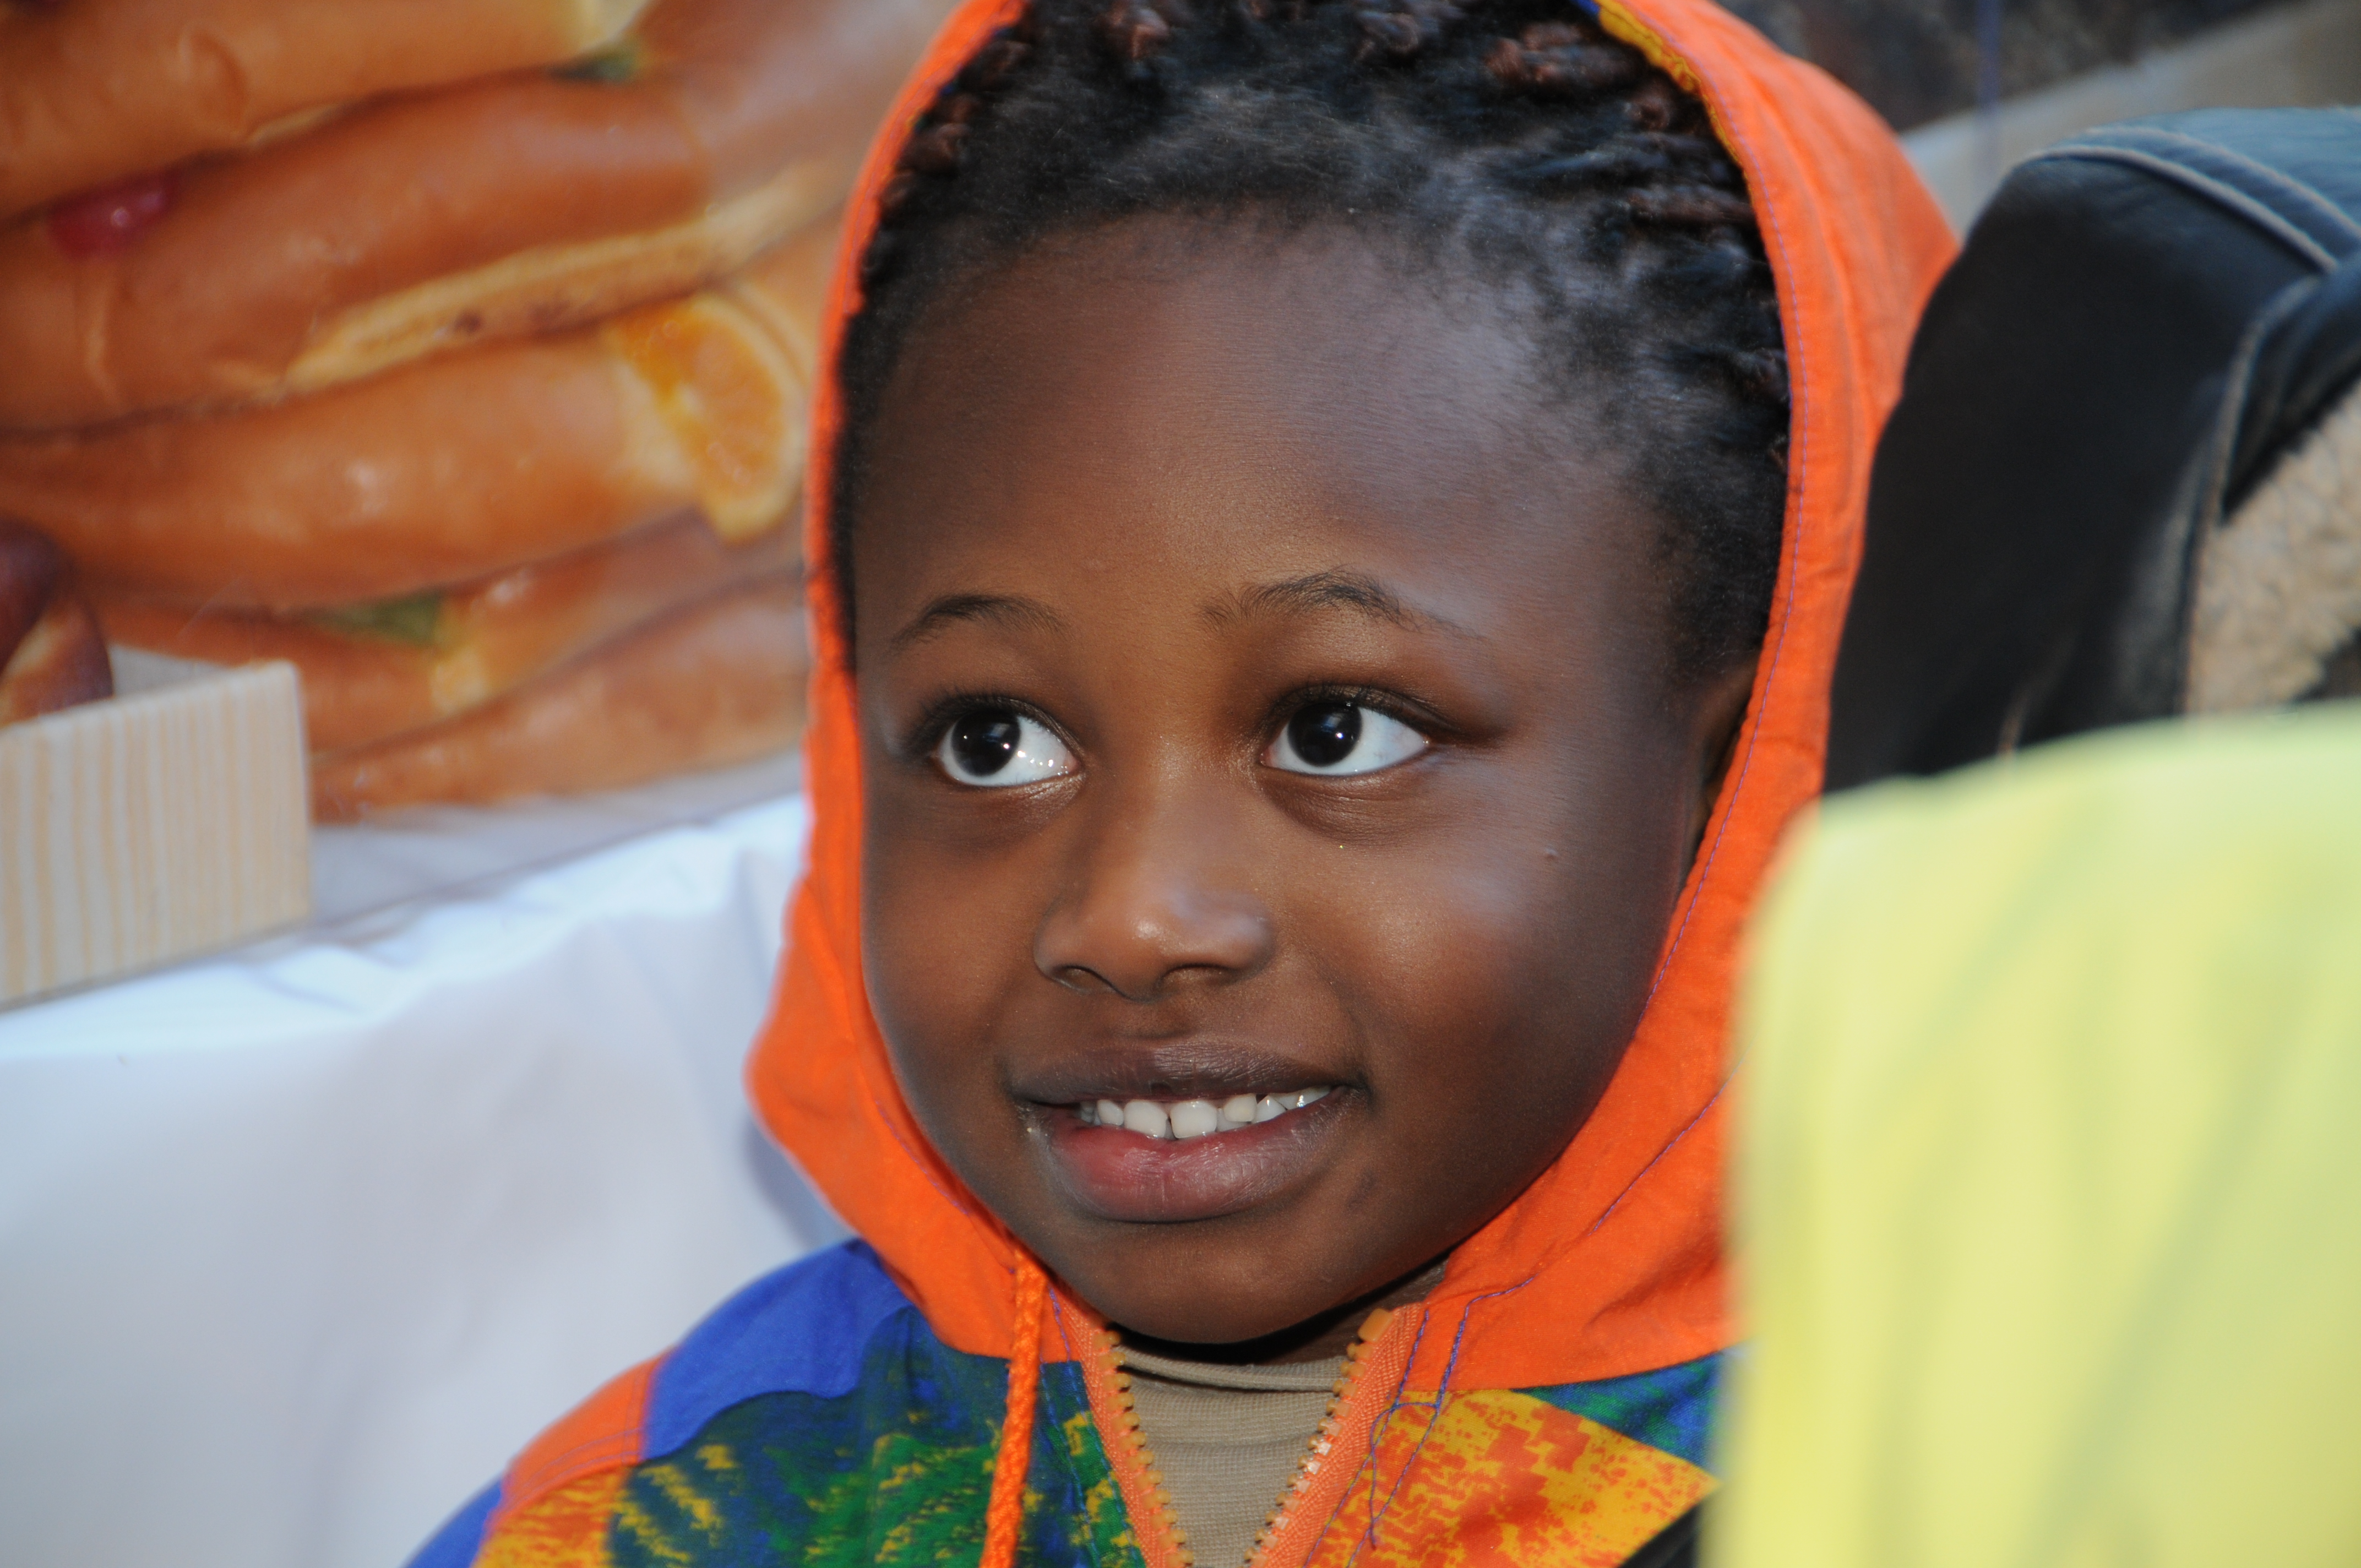 La imagen muestra un niño negrito sonriendo con una  chaqueta naranja.